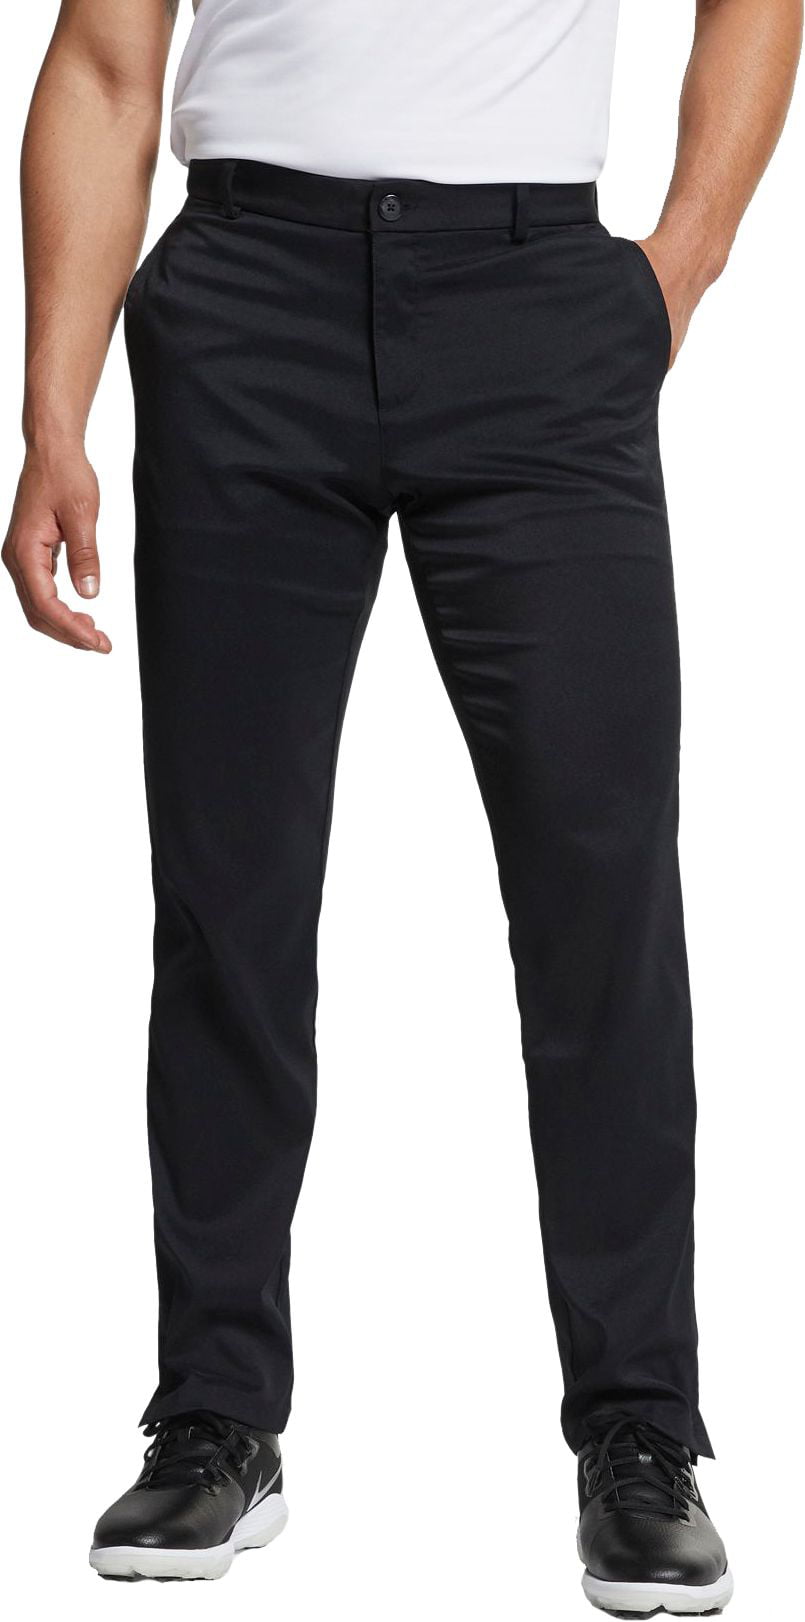 Nike Men's Flat Front Flex Golf Pants - Walmart.com